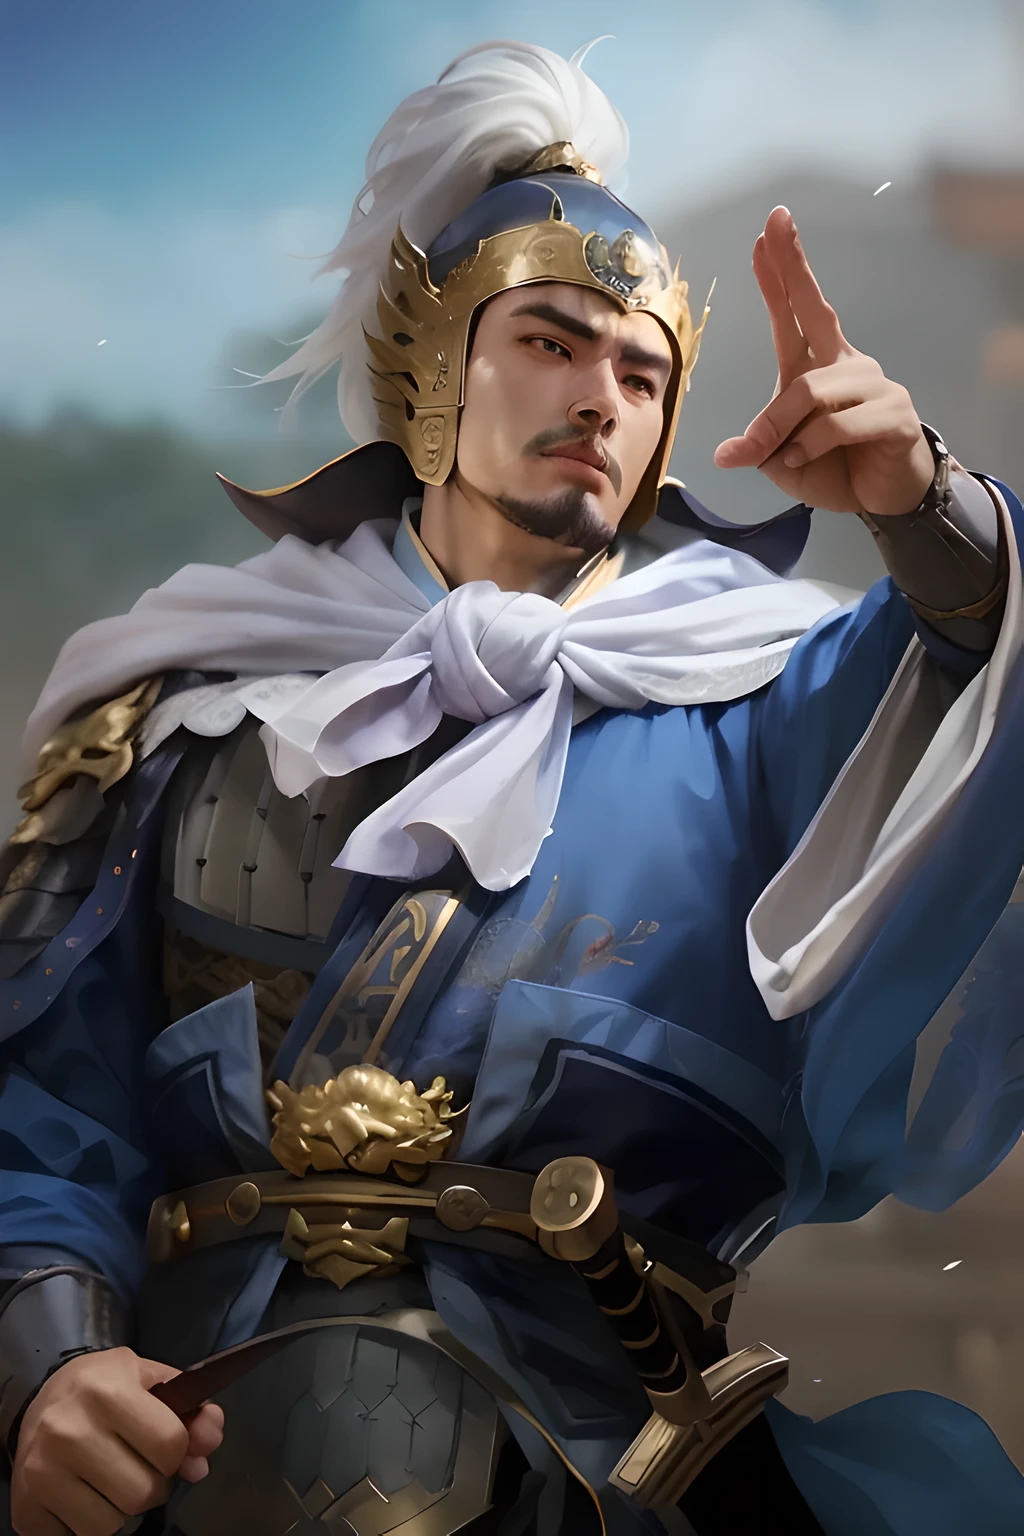 Vestido de azul e dourado、Homem Alafid segurando espada, Heise Jinyao, Zhao Yun, inspirado em Huang Shen, Dragão, inspirado em Cao Zhibai, yang-qi, Inspirado por Hu Zaobin, 《genshin》Keqing em, bian lian, feng shu, inspirado em Li Rong Jin, Inspirado por Dong Yuan